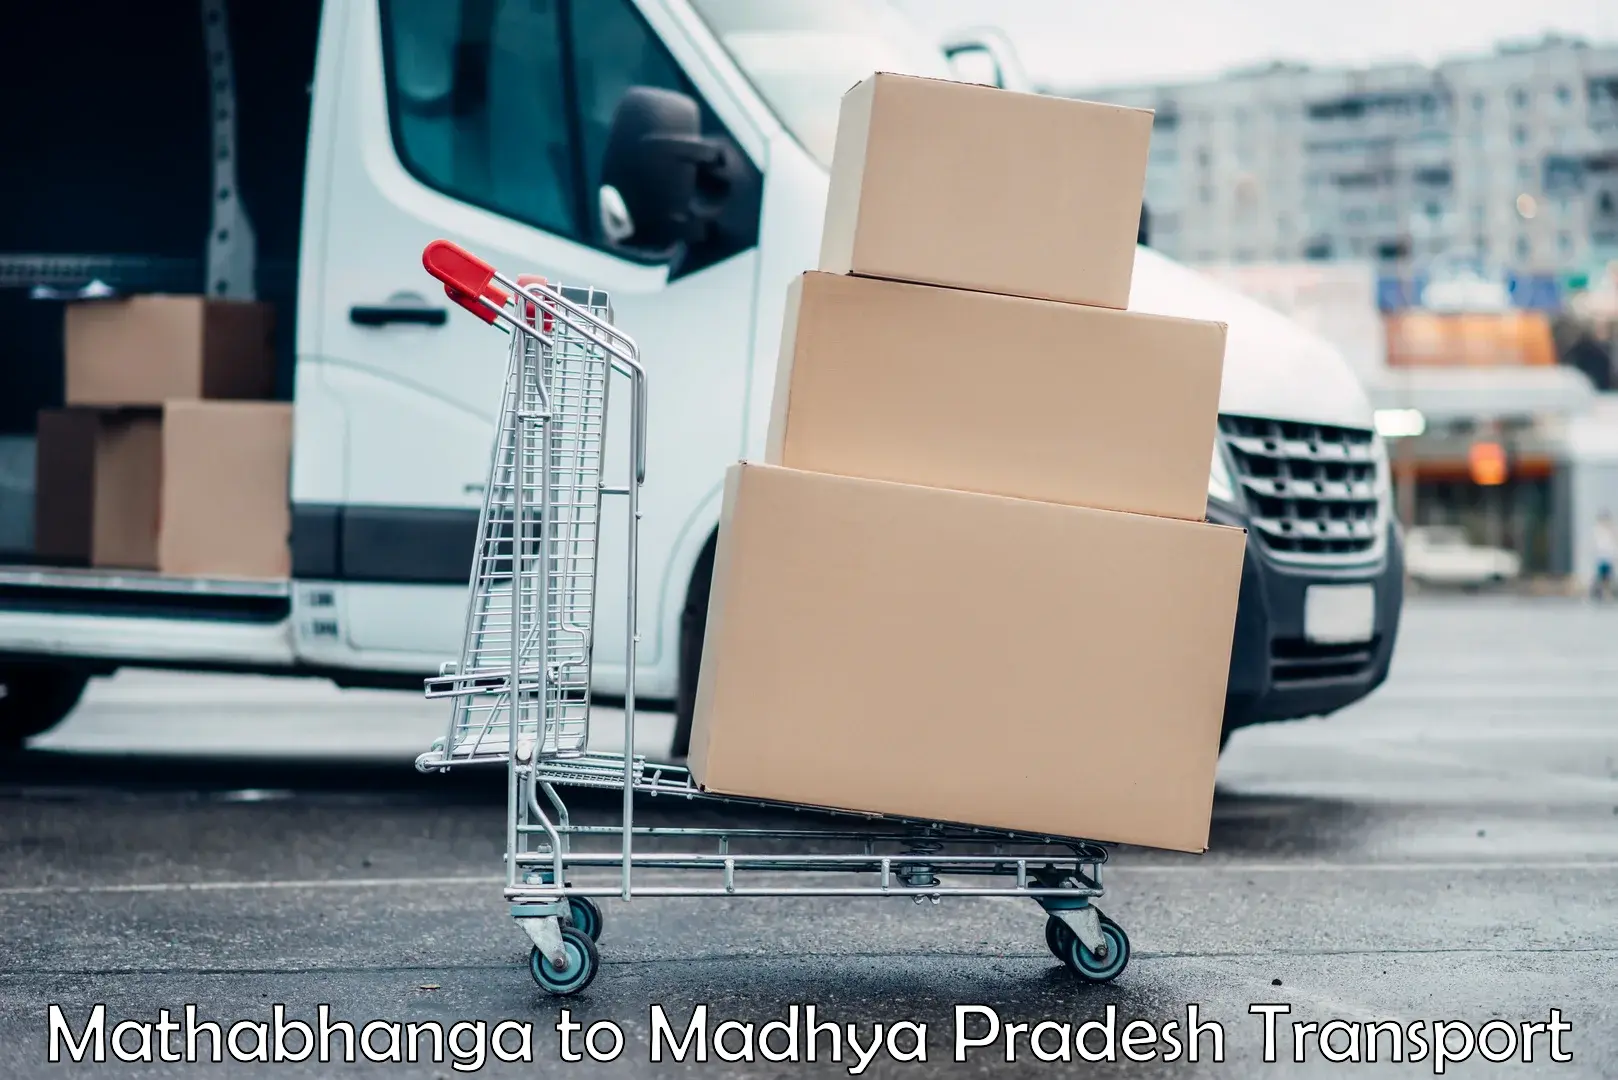 Furniture transport service Mathabhanga to Shahgarh